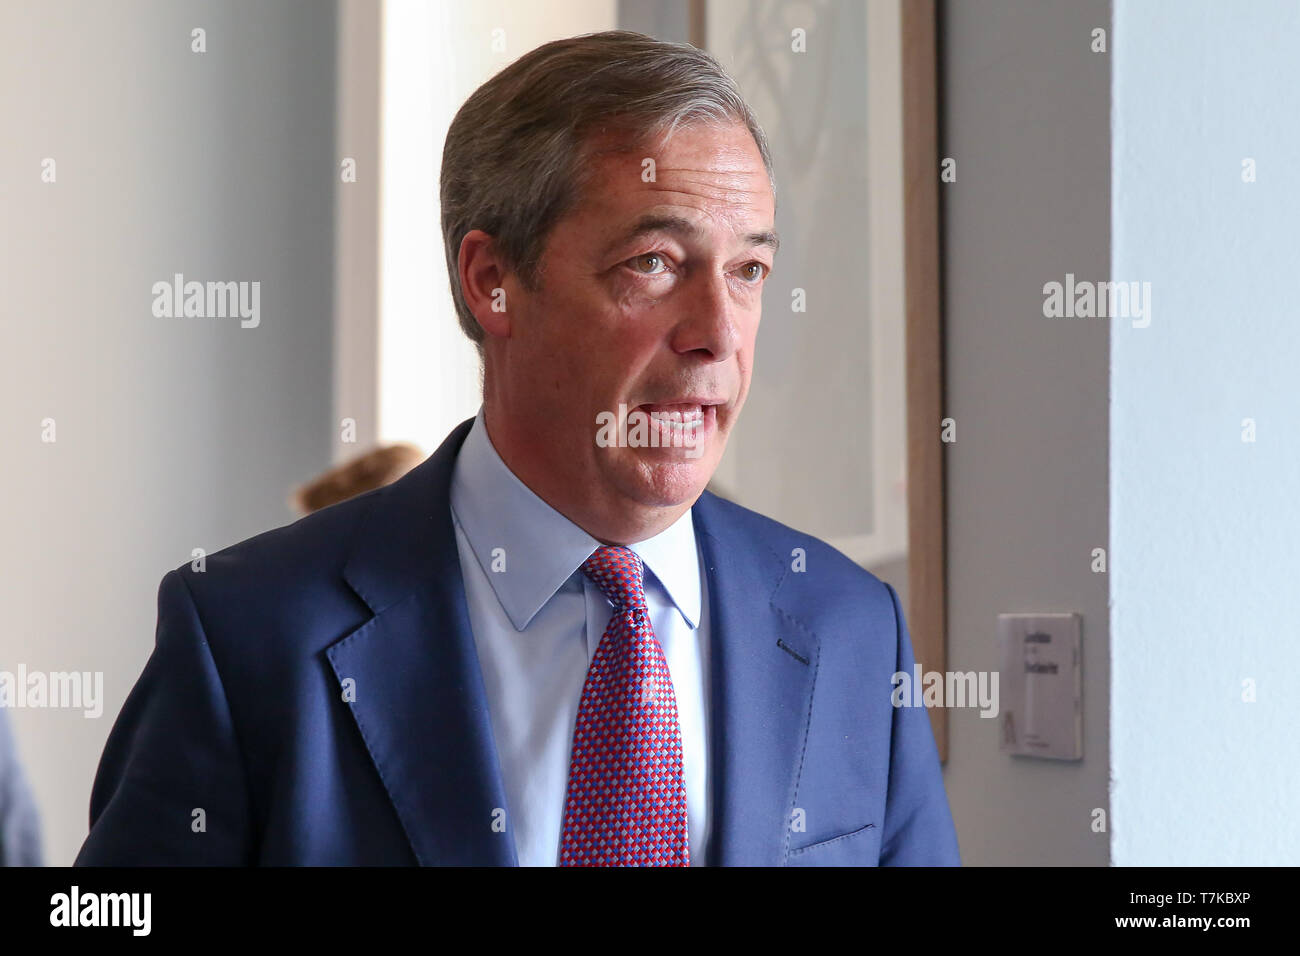 Leader del Partito Brexit Nigel Farage è visto parlare durante la Brexit parte della conferenza stampa per la campagna elettorale europea di Westminster. Il Regno Unito prenderà parte nel caso delle elezioni europee che si svolgeranno il 23 maggio 2019. Foto Stock